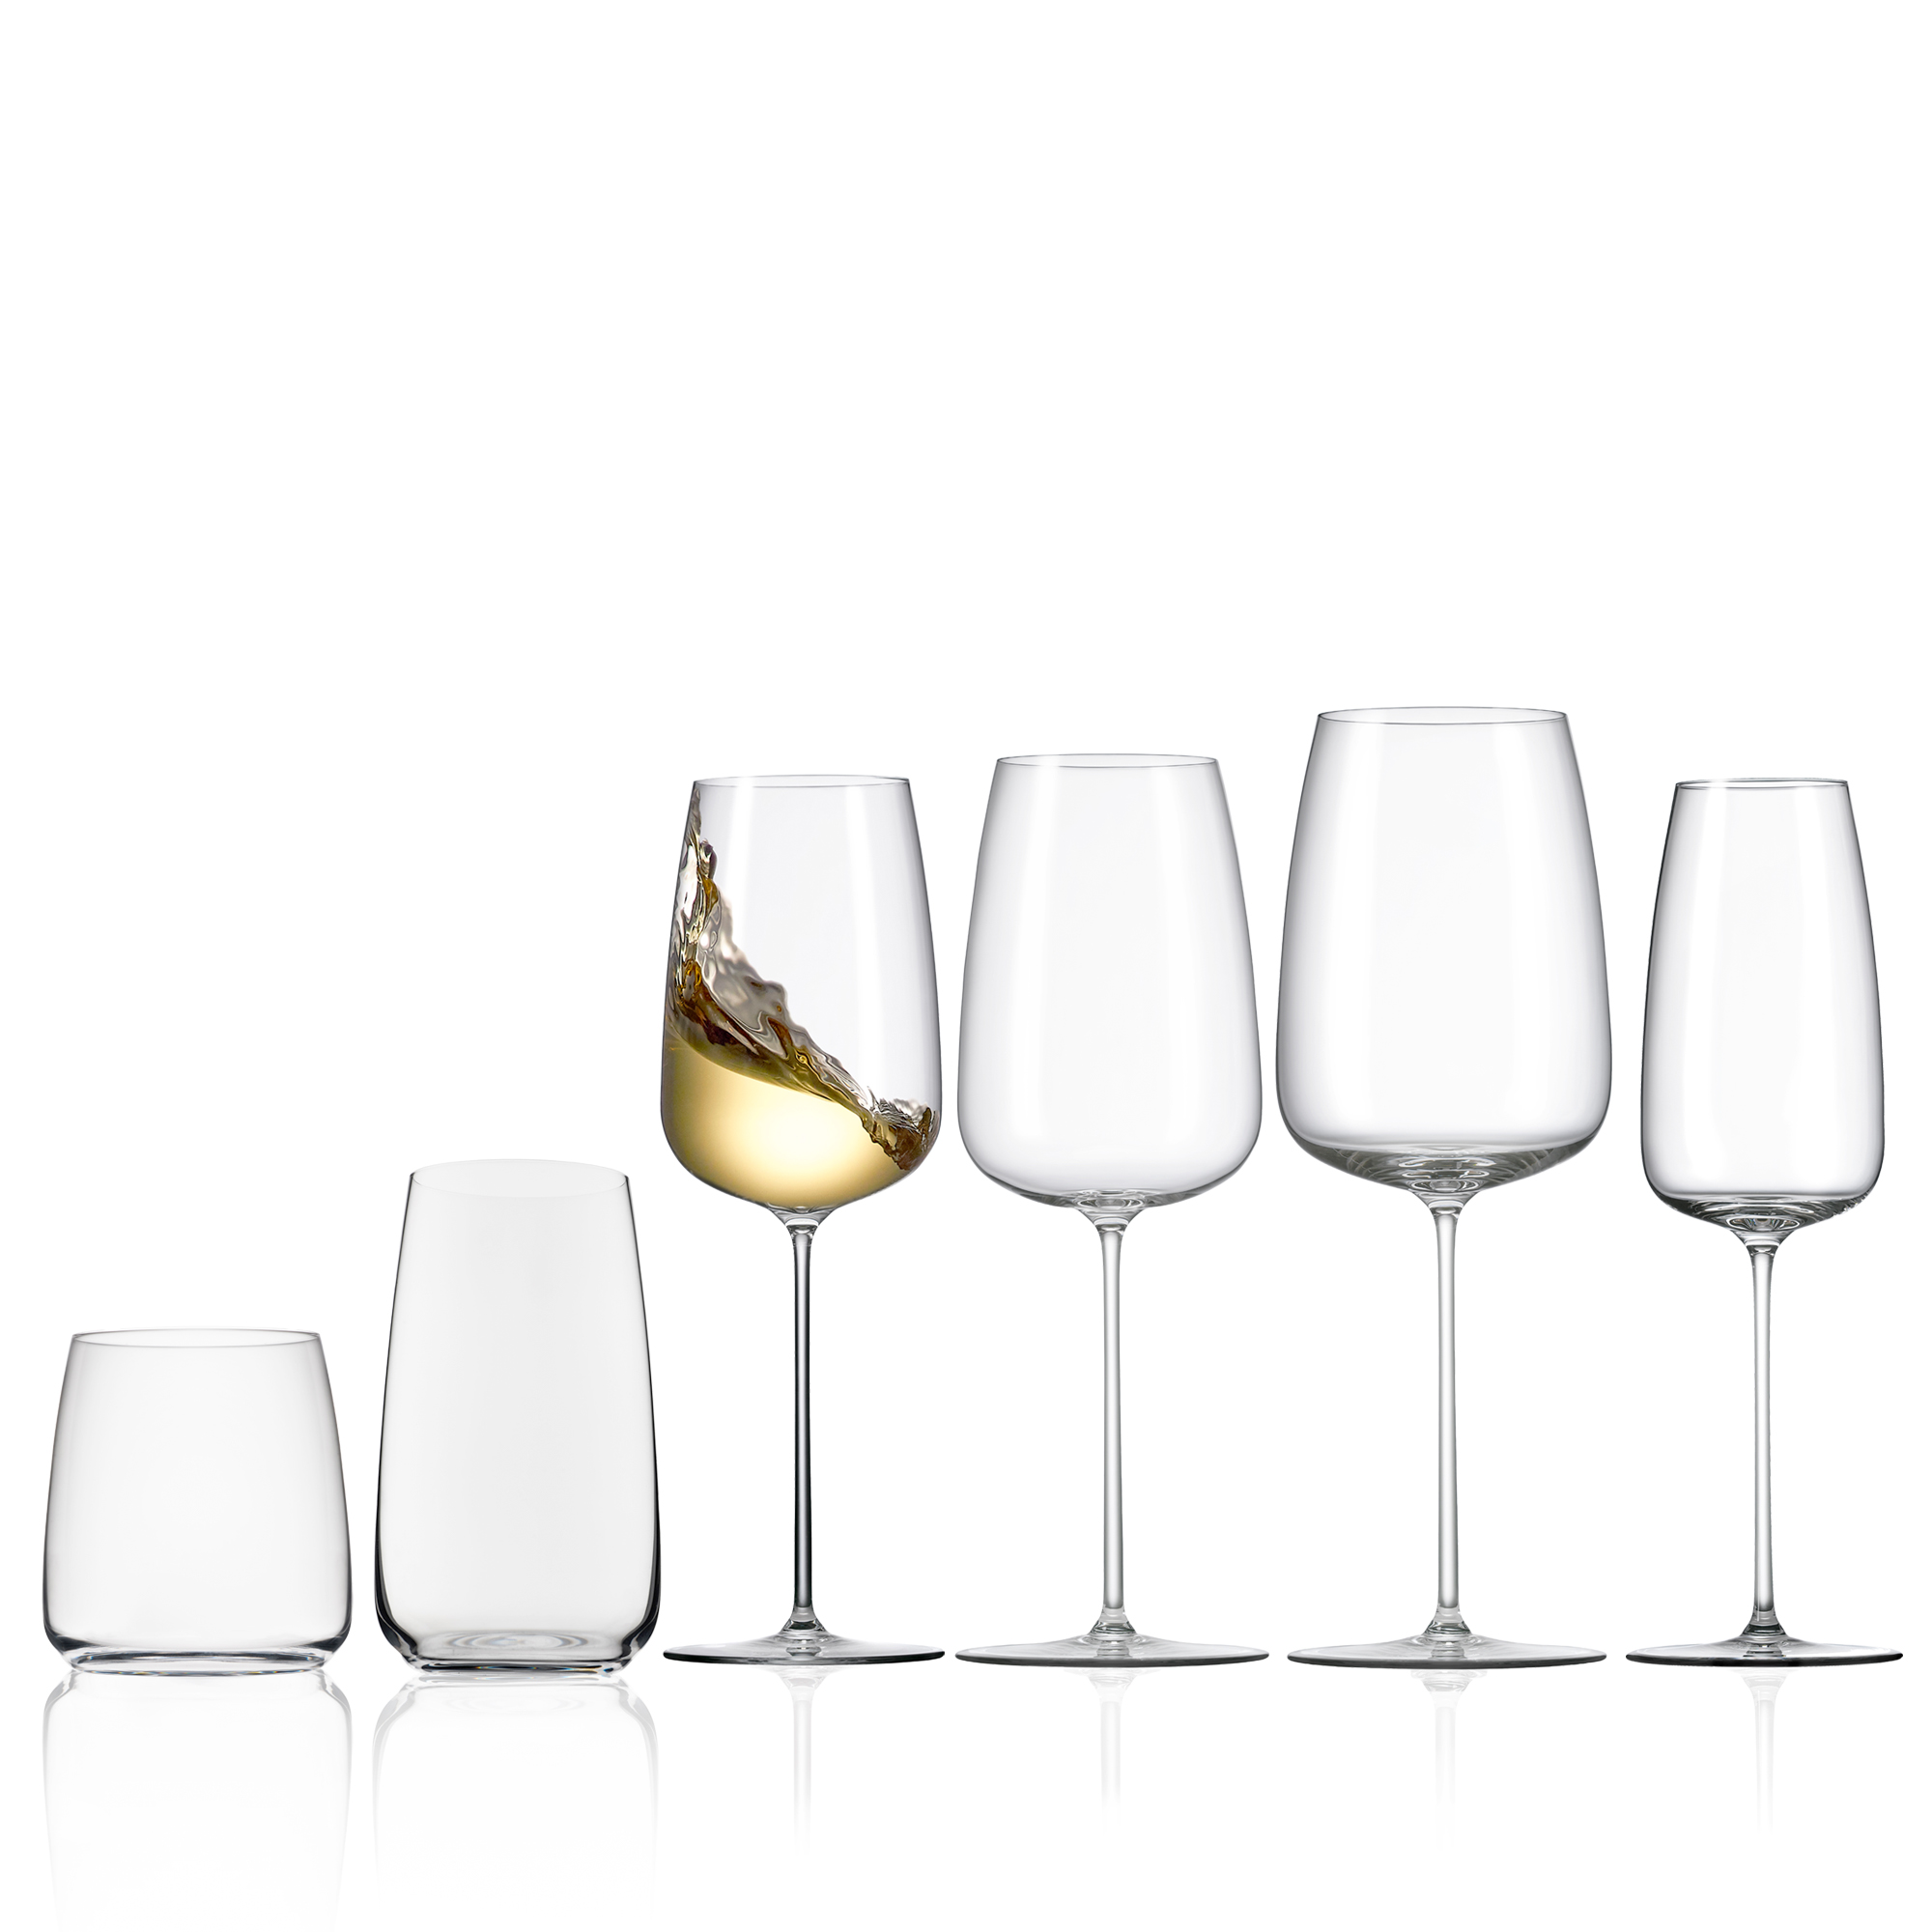 Talismano 7 oz Prosecco / Sparkling Small Wine Glasses (Set of 4)